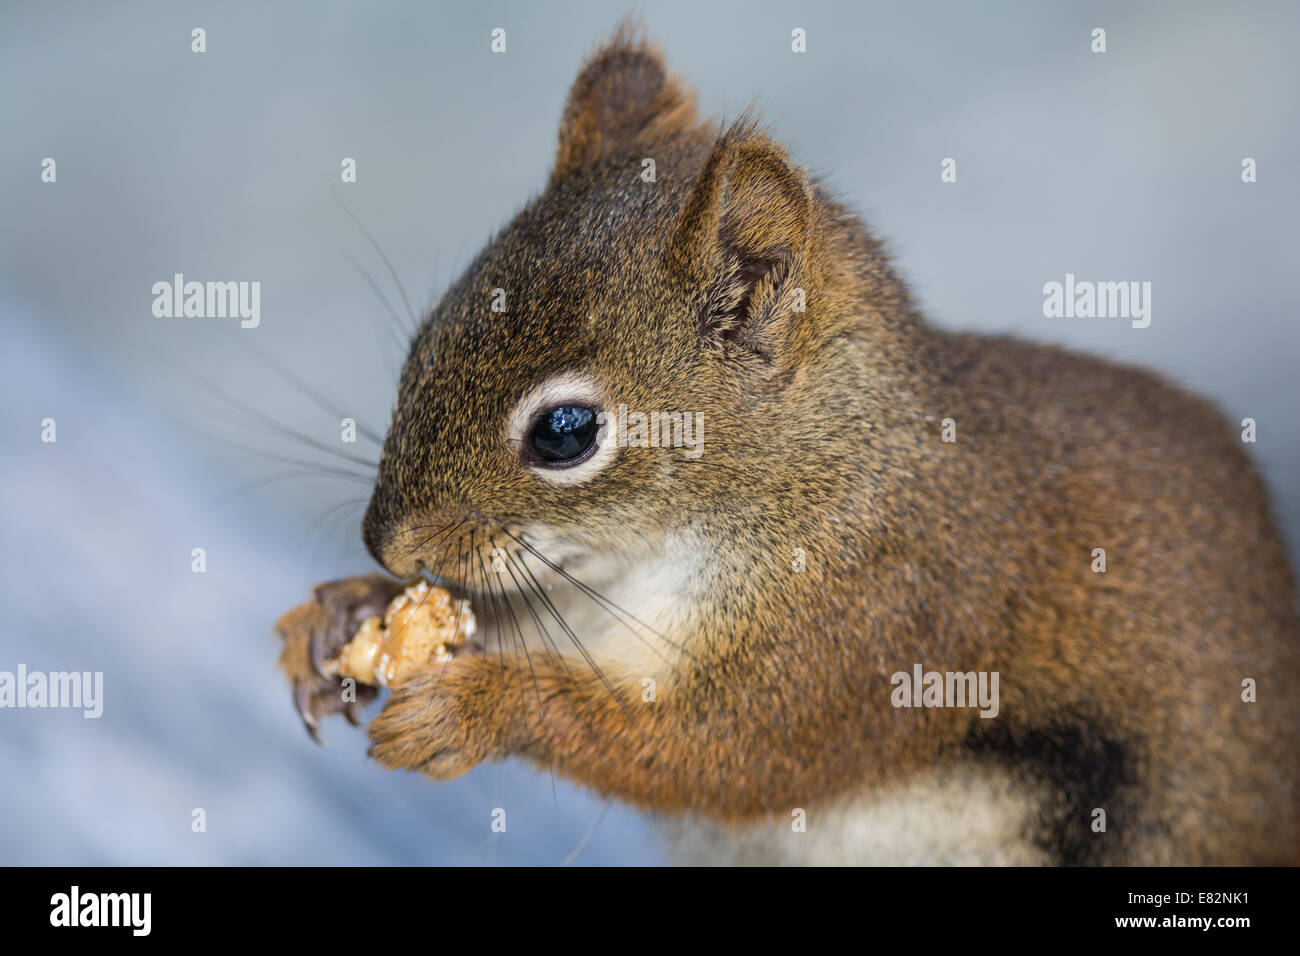 Eine Nahaufnahme von einem Eichhörnchen Essen etwas zu essen Stockfoto